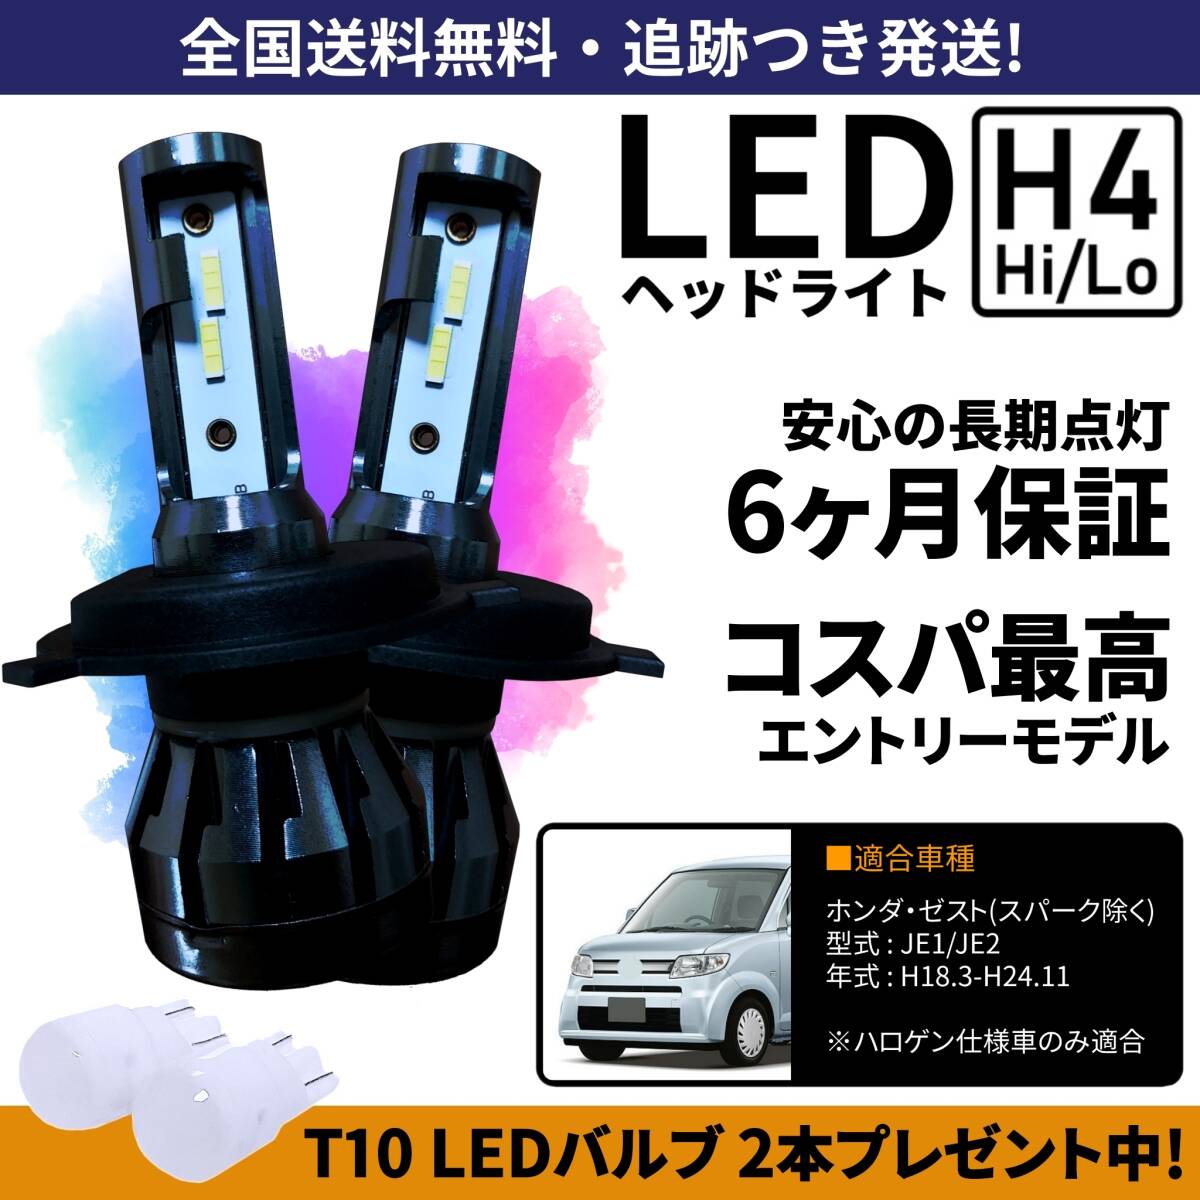 【送料無料】ホンダ ゼスト JE1 JE2 LEDヘッドライト H4 Hi/Lo ホワイト 6000K 車検対応 保証付き_画像1